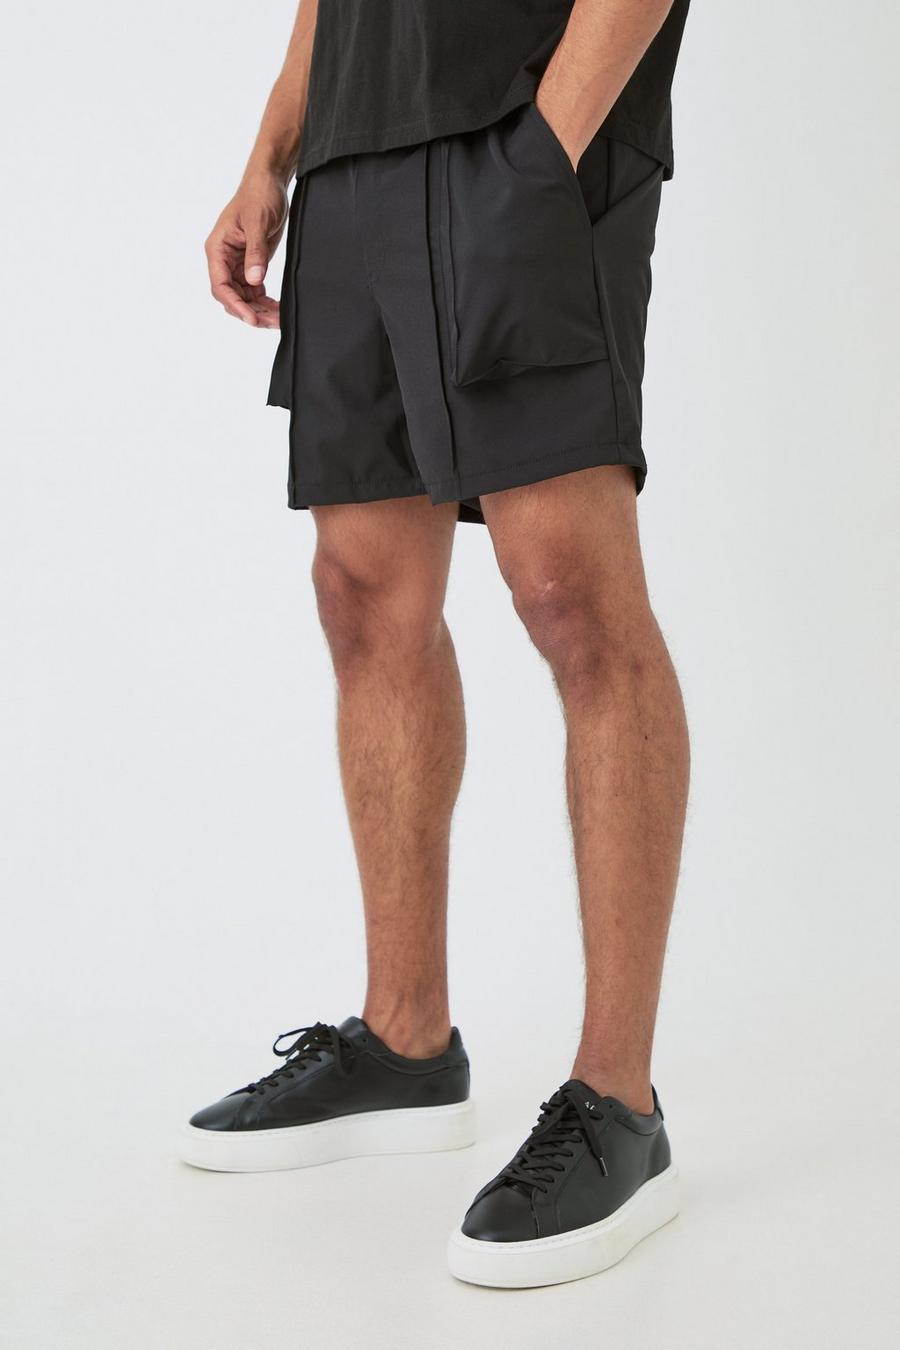 Pantalón corto técnico elástico elegante plisado, Black